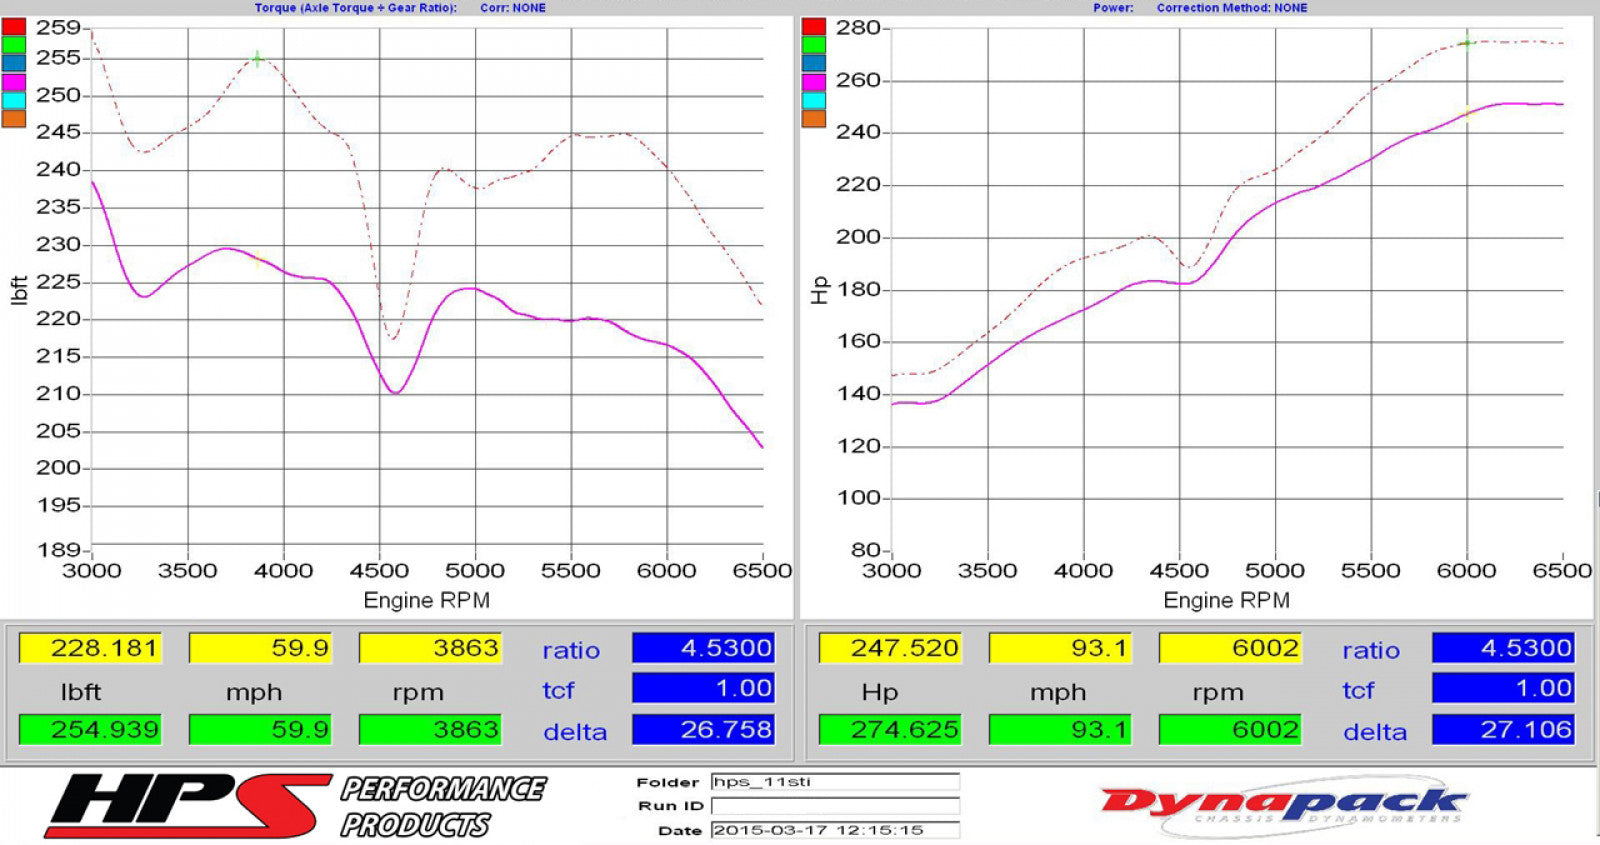 HPS Performance Polish Cold Air Intake Kit for 08-14 Subaru WRX STI 2.5L Turbo